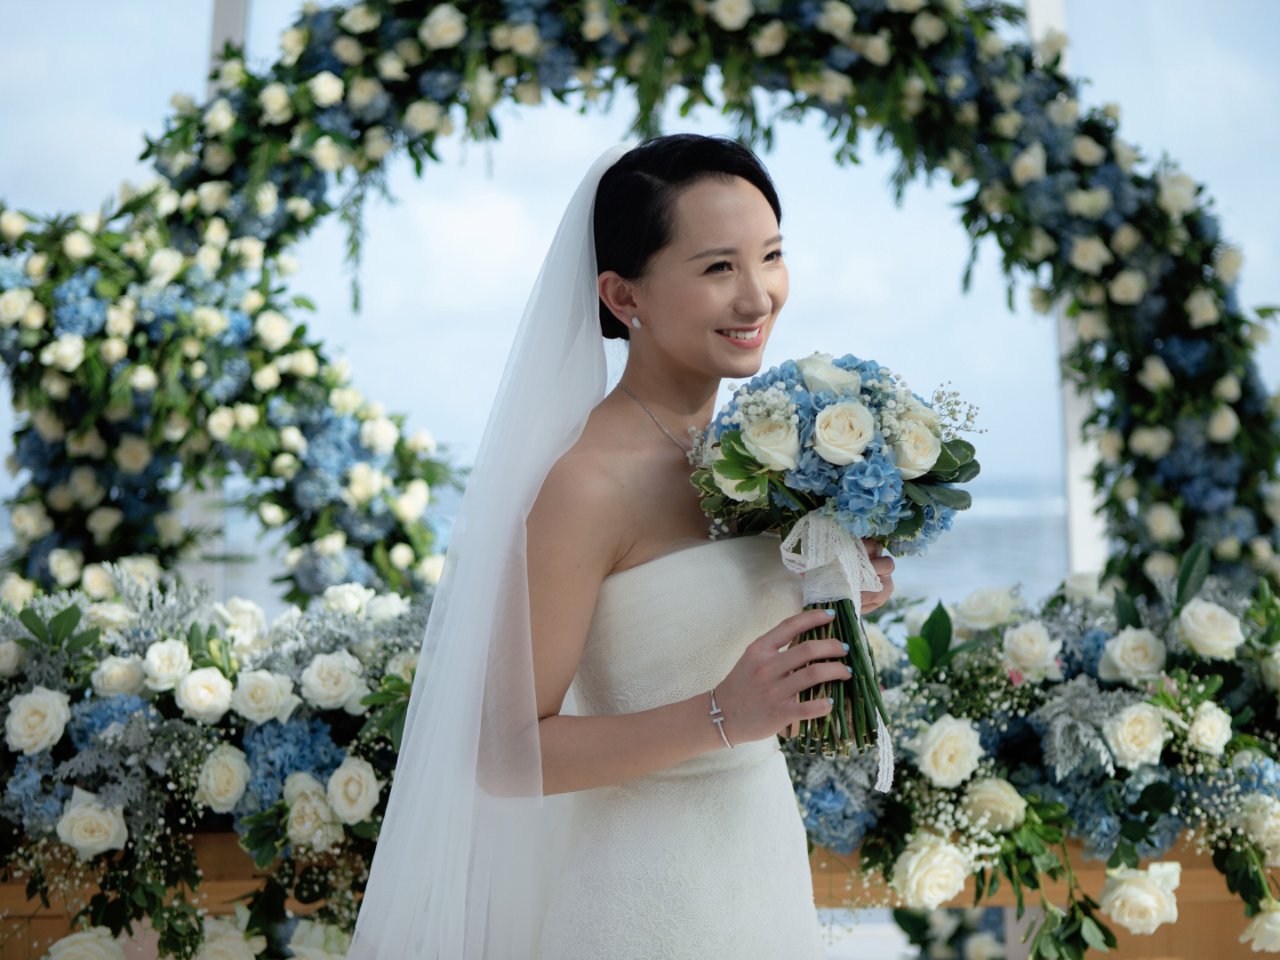 婚礼大作战,Tiffany & Co. 蒂芙尼,TSL 谢瑞麟,Vera Wang 王薇薇